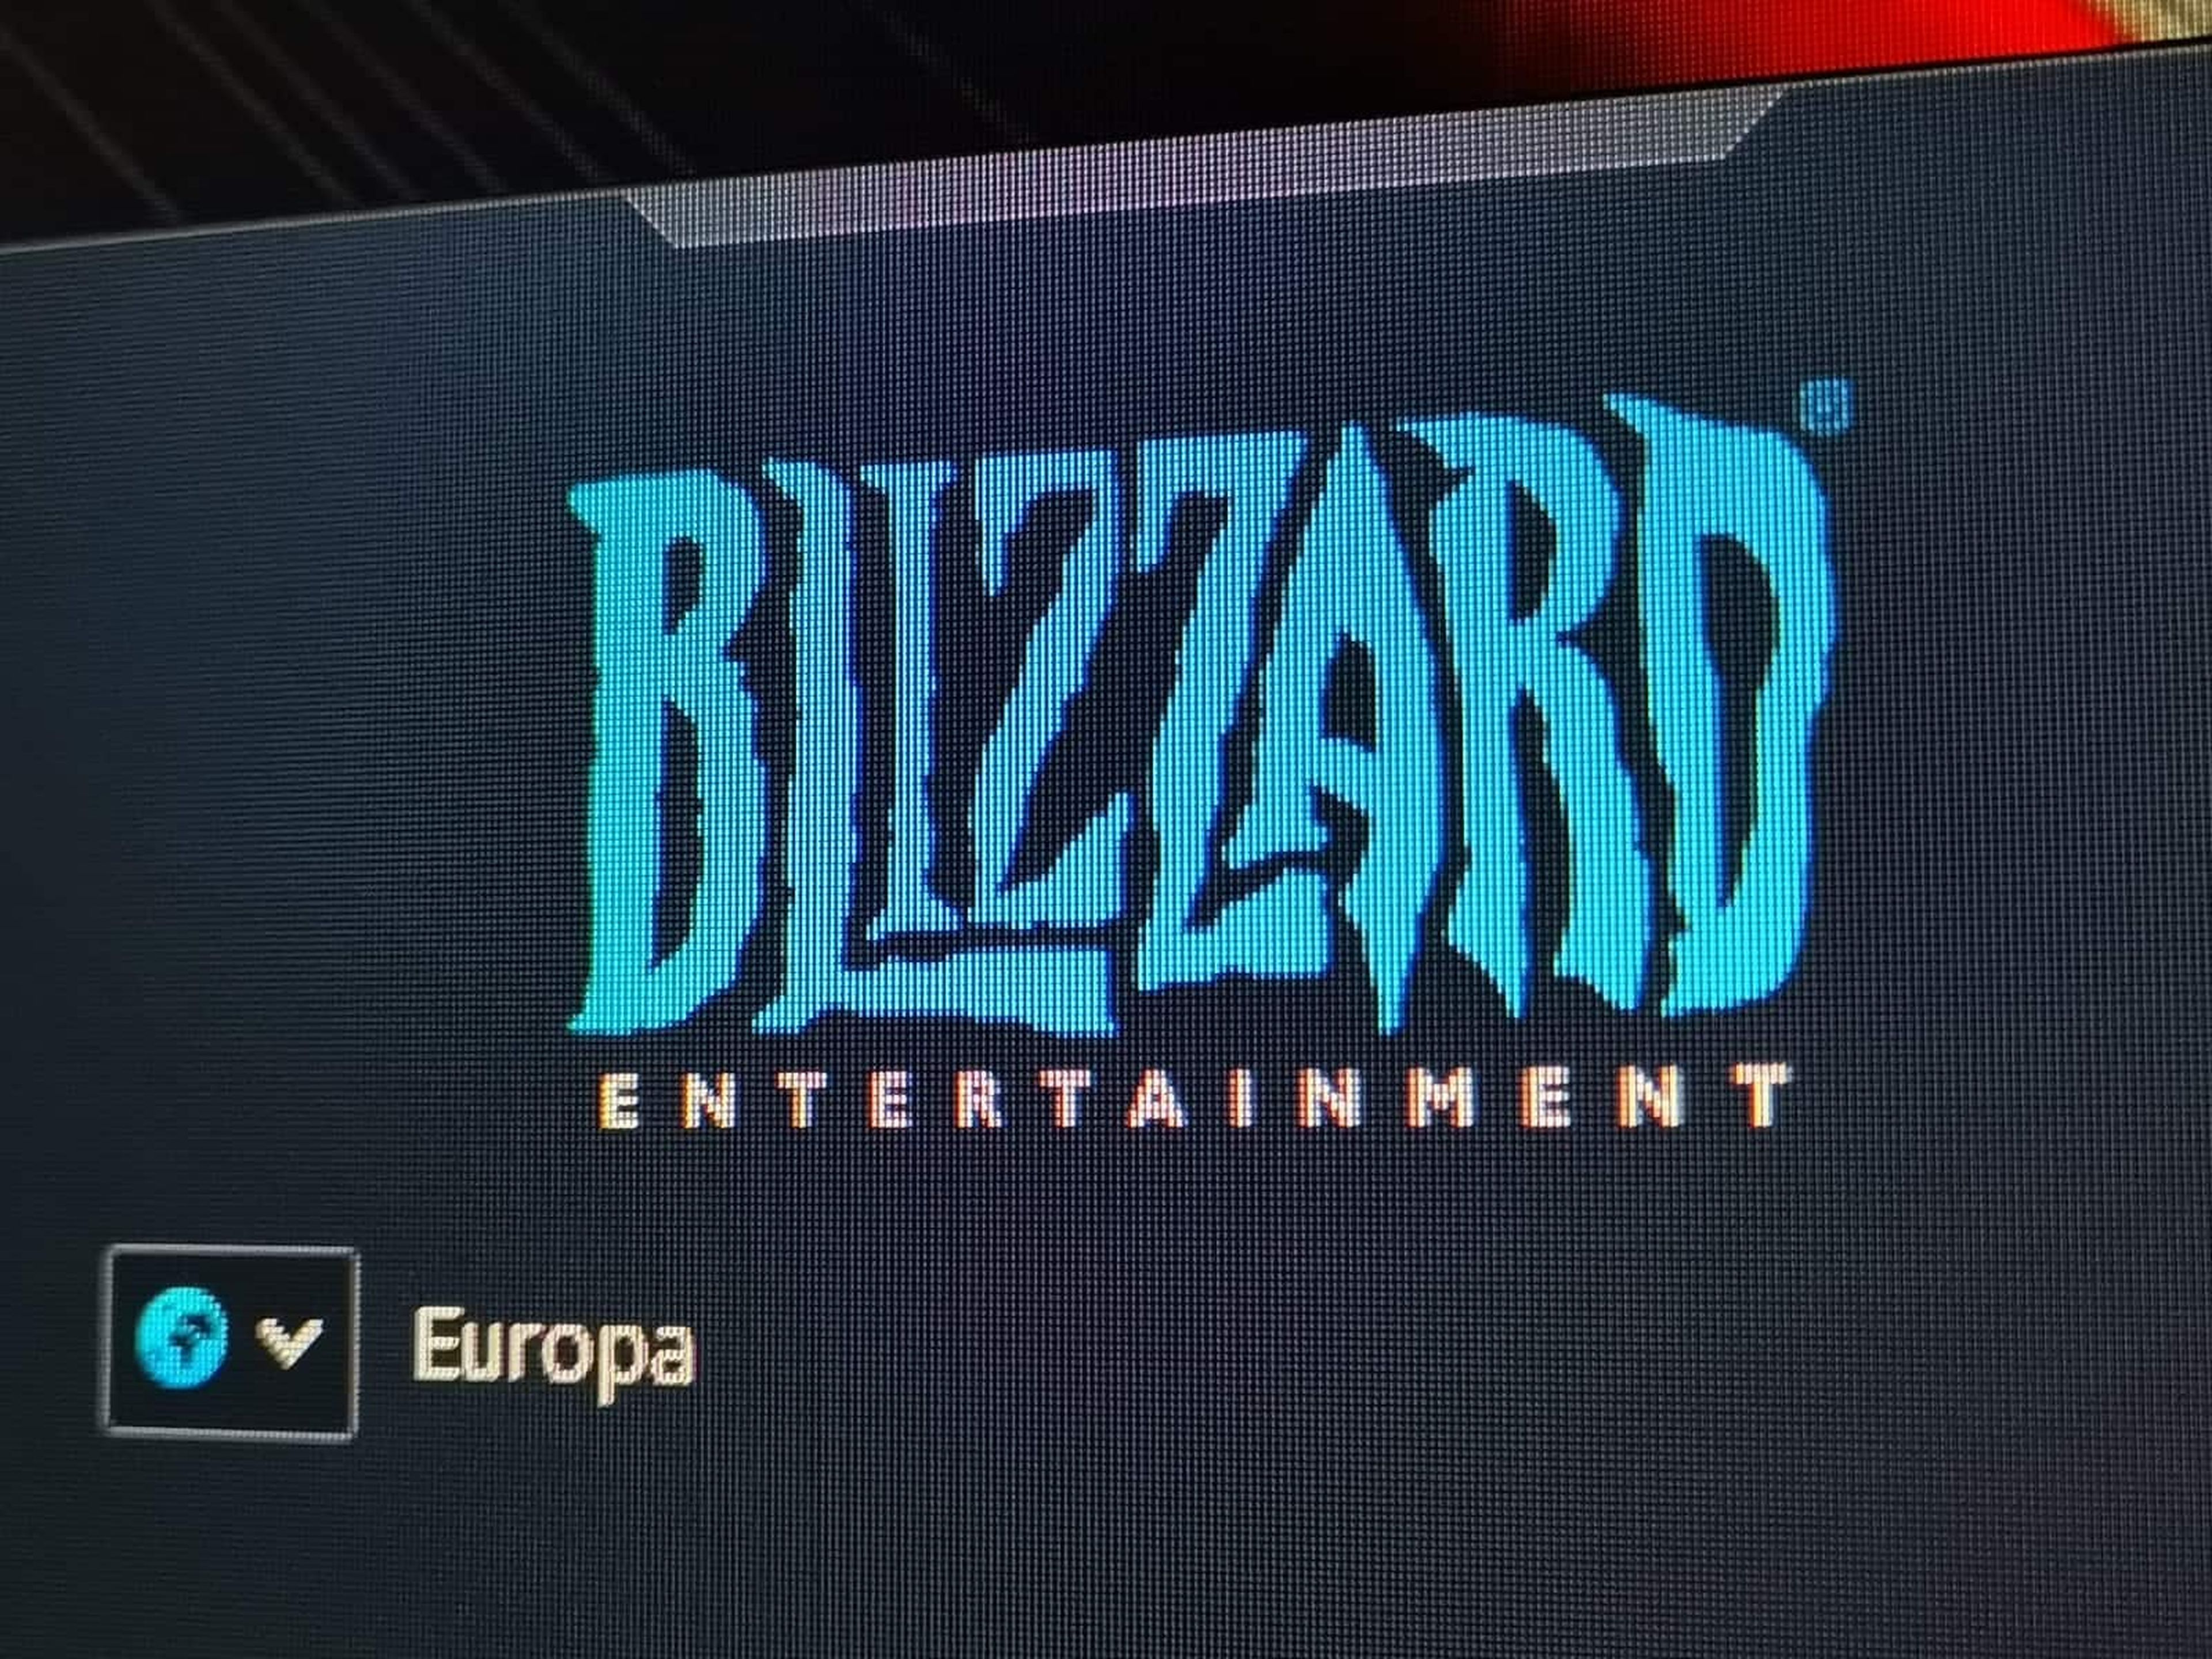 Logo de Blizzard